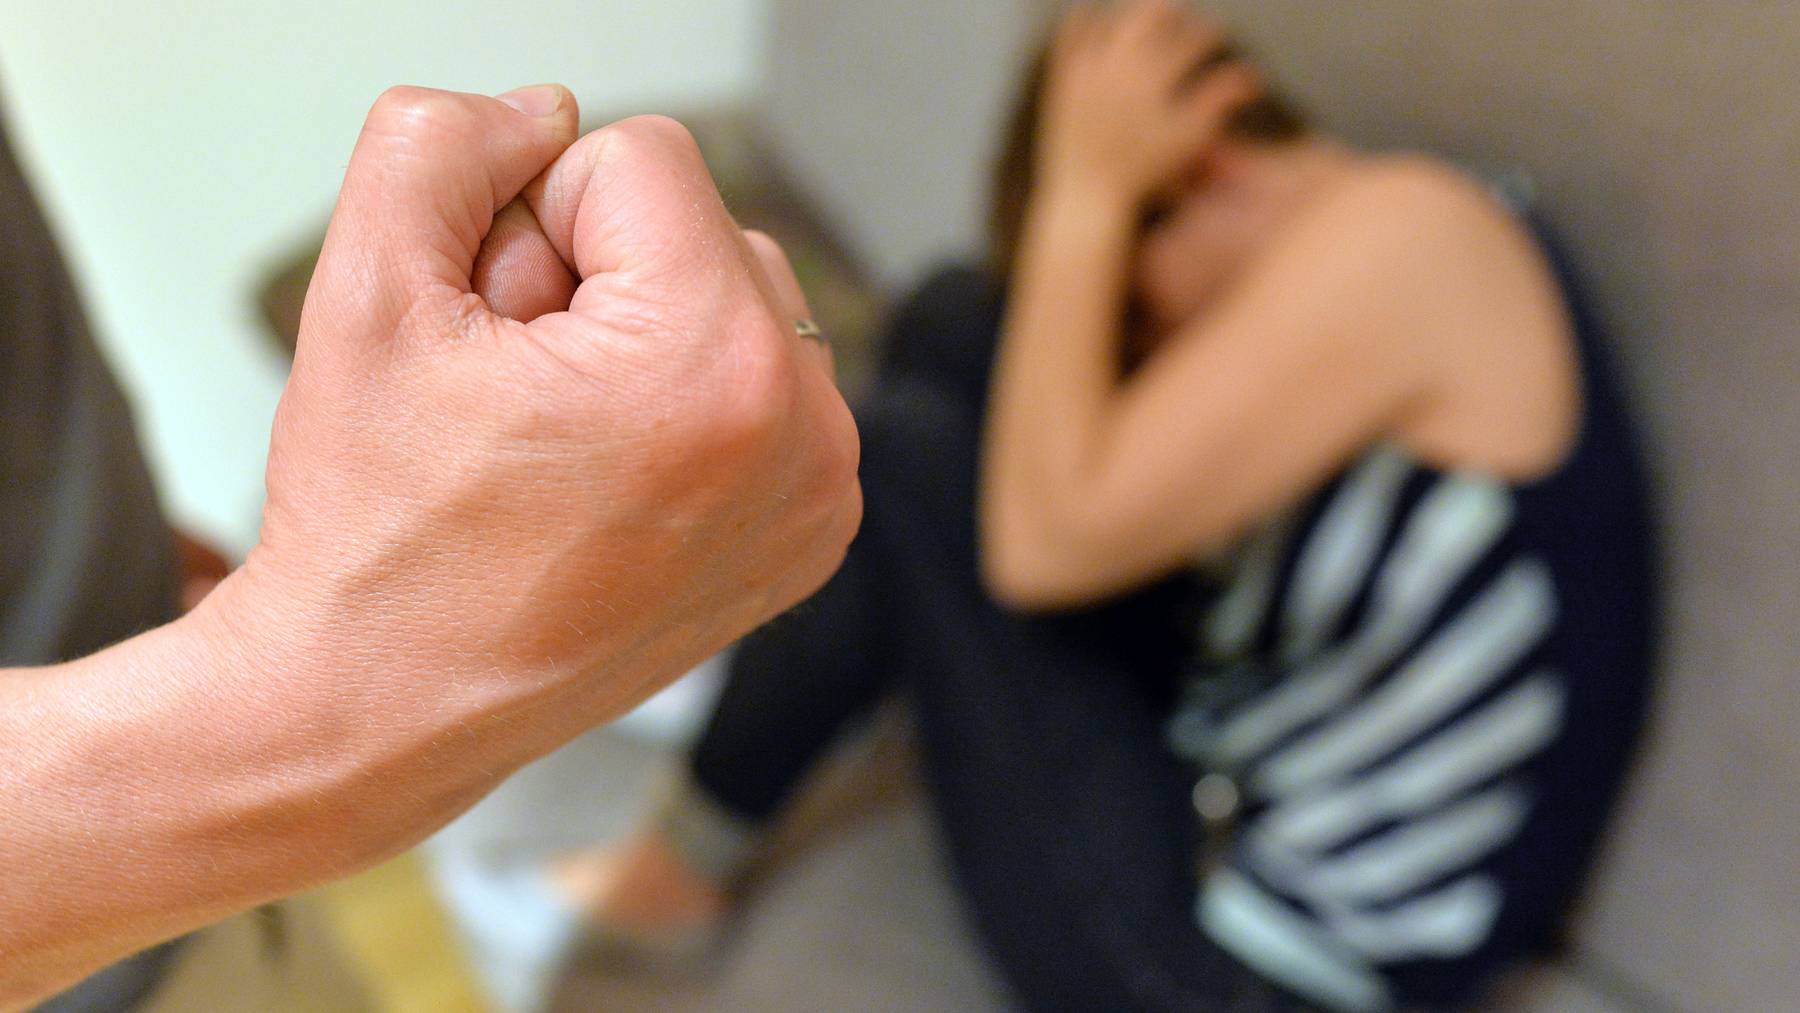 Der Kanton Zürich ergreift Sofortmassnahmen für die Hilfe von Opfern von Häuslicher Gewalt. (Symbolbild)